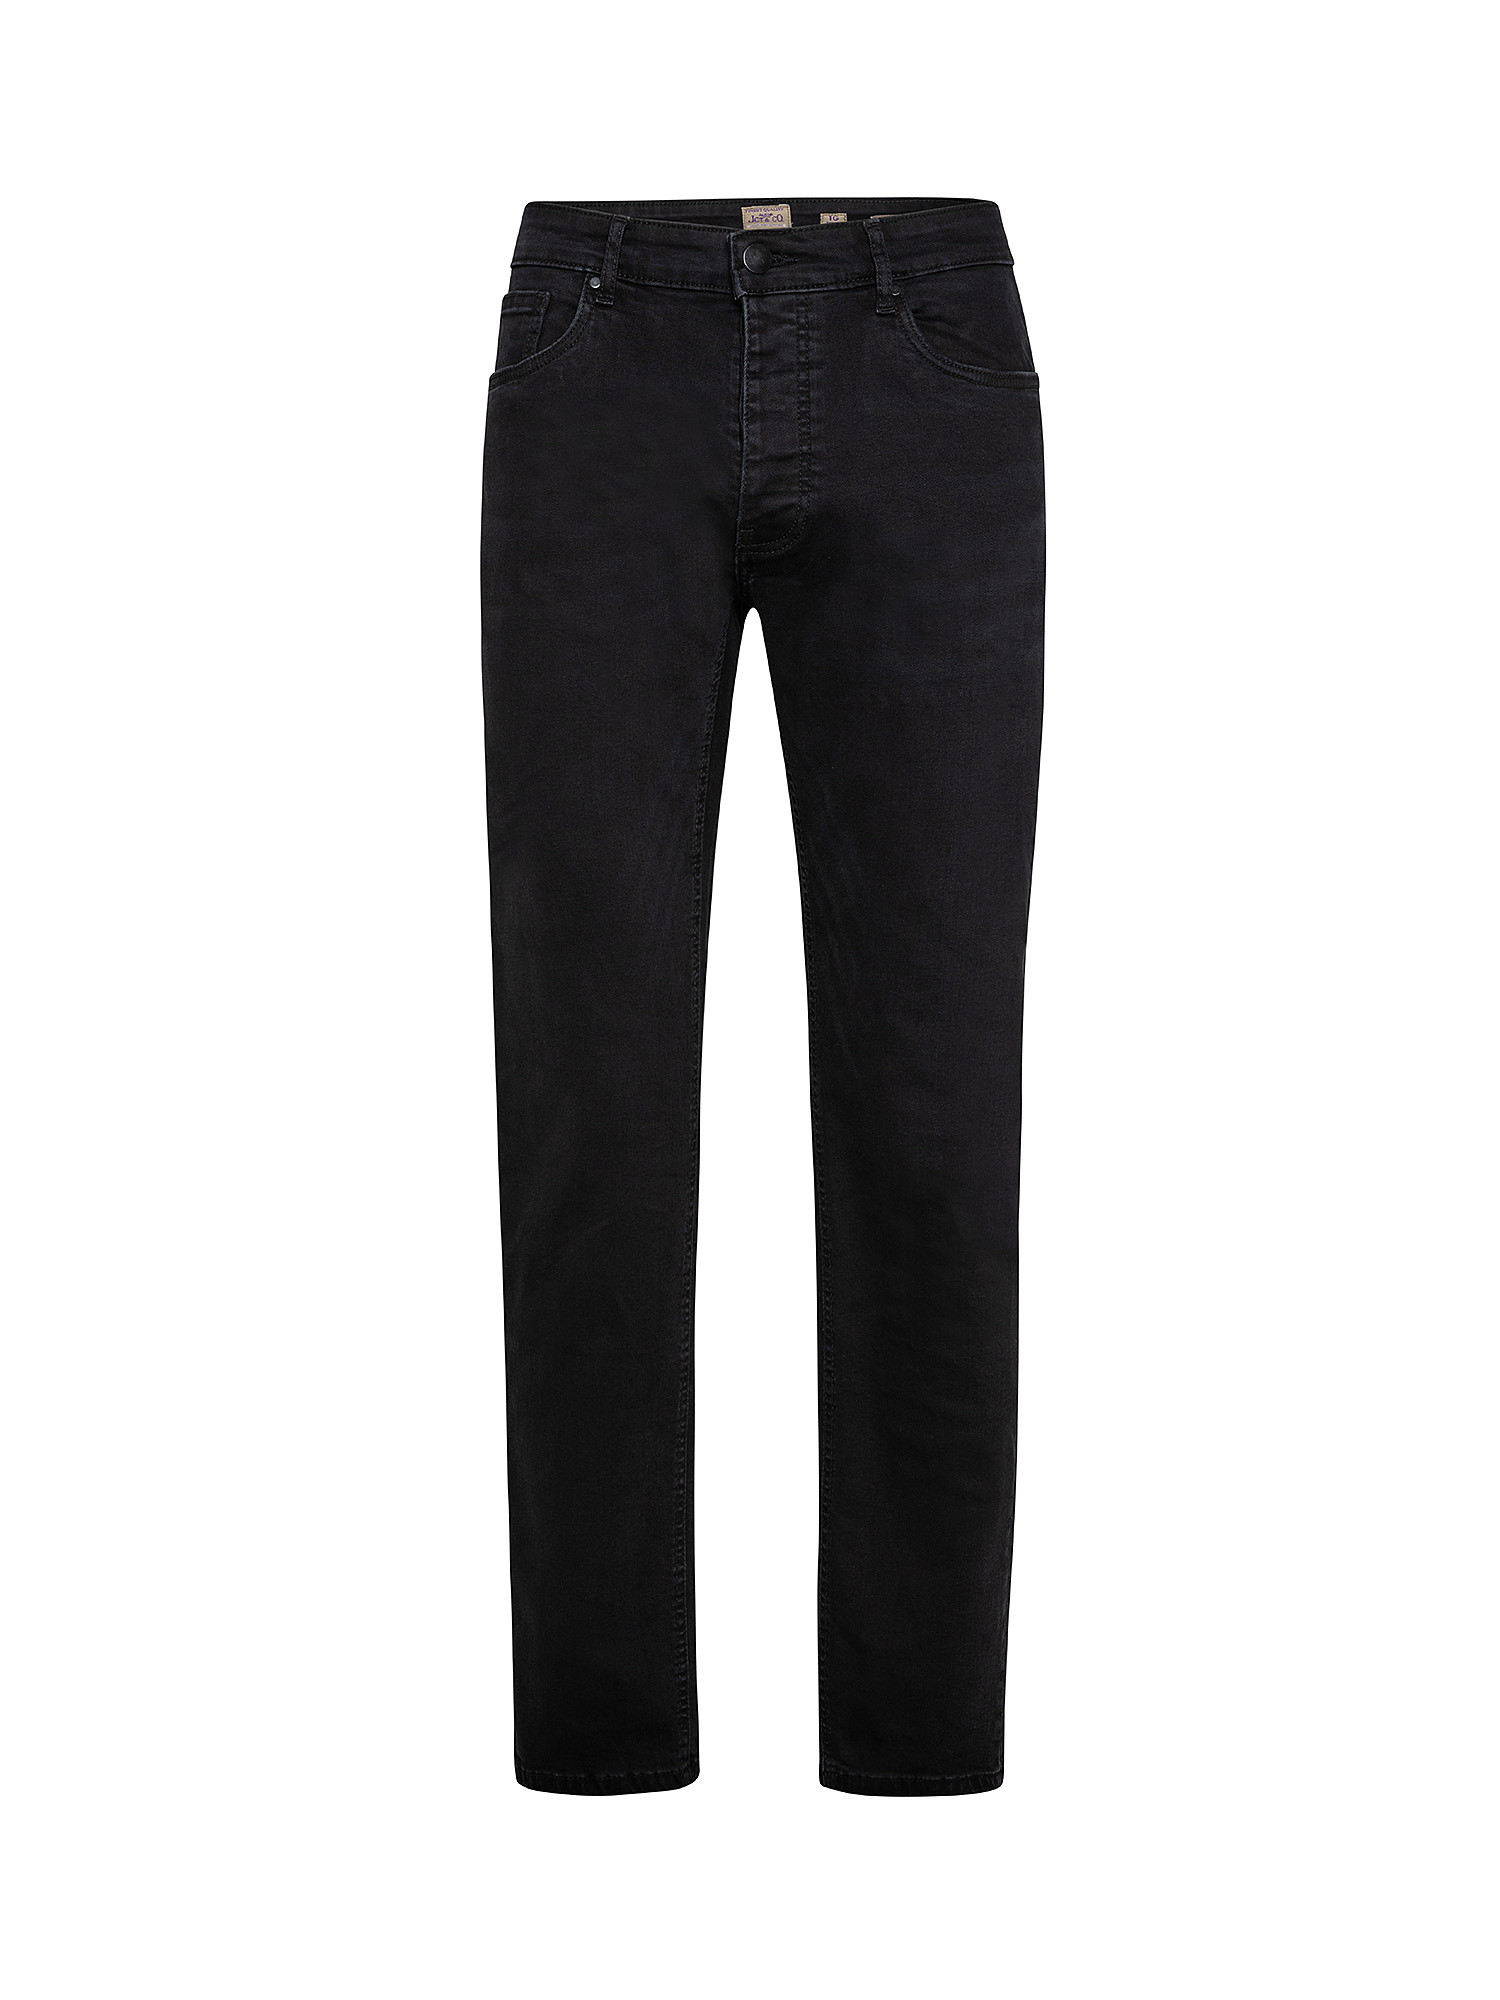 Five pocket jeans, Black, large image number 0